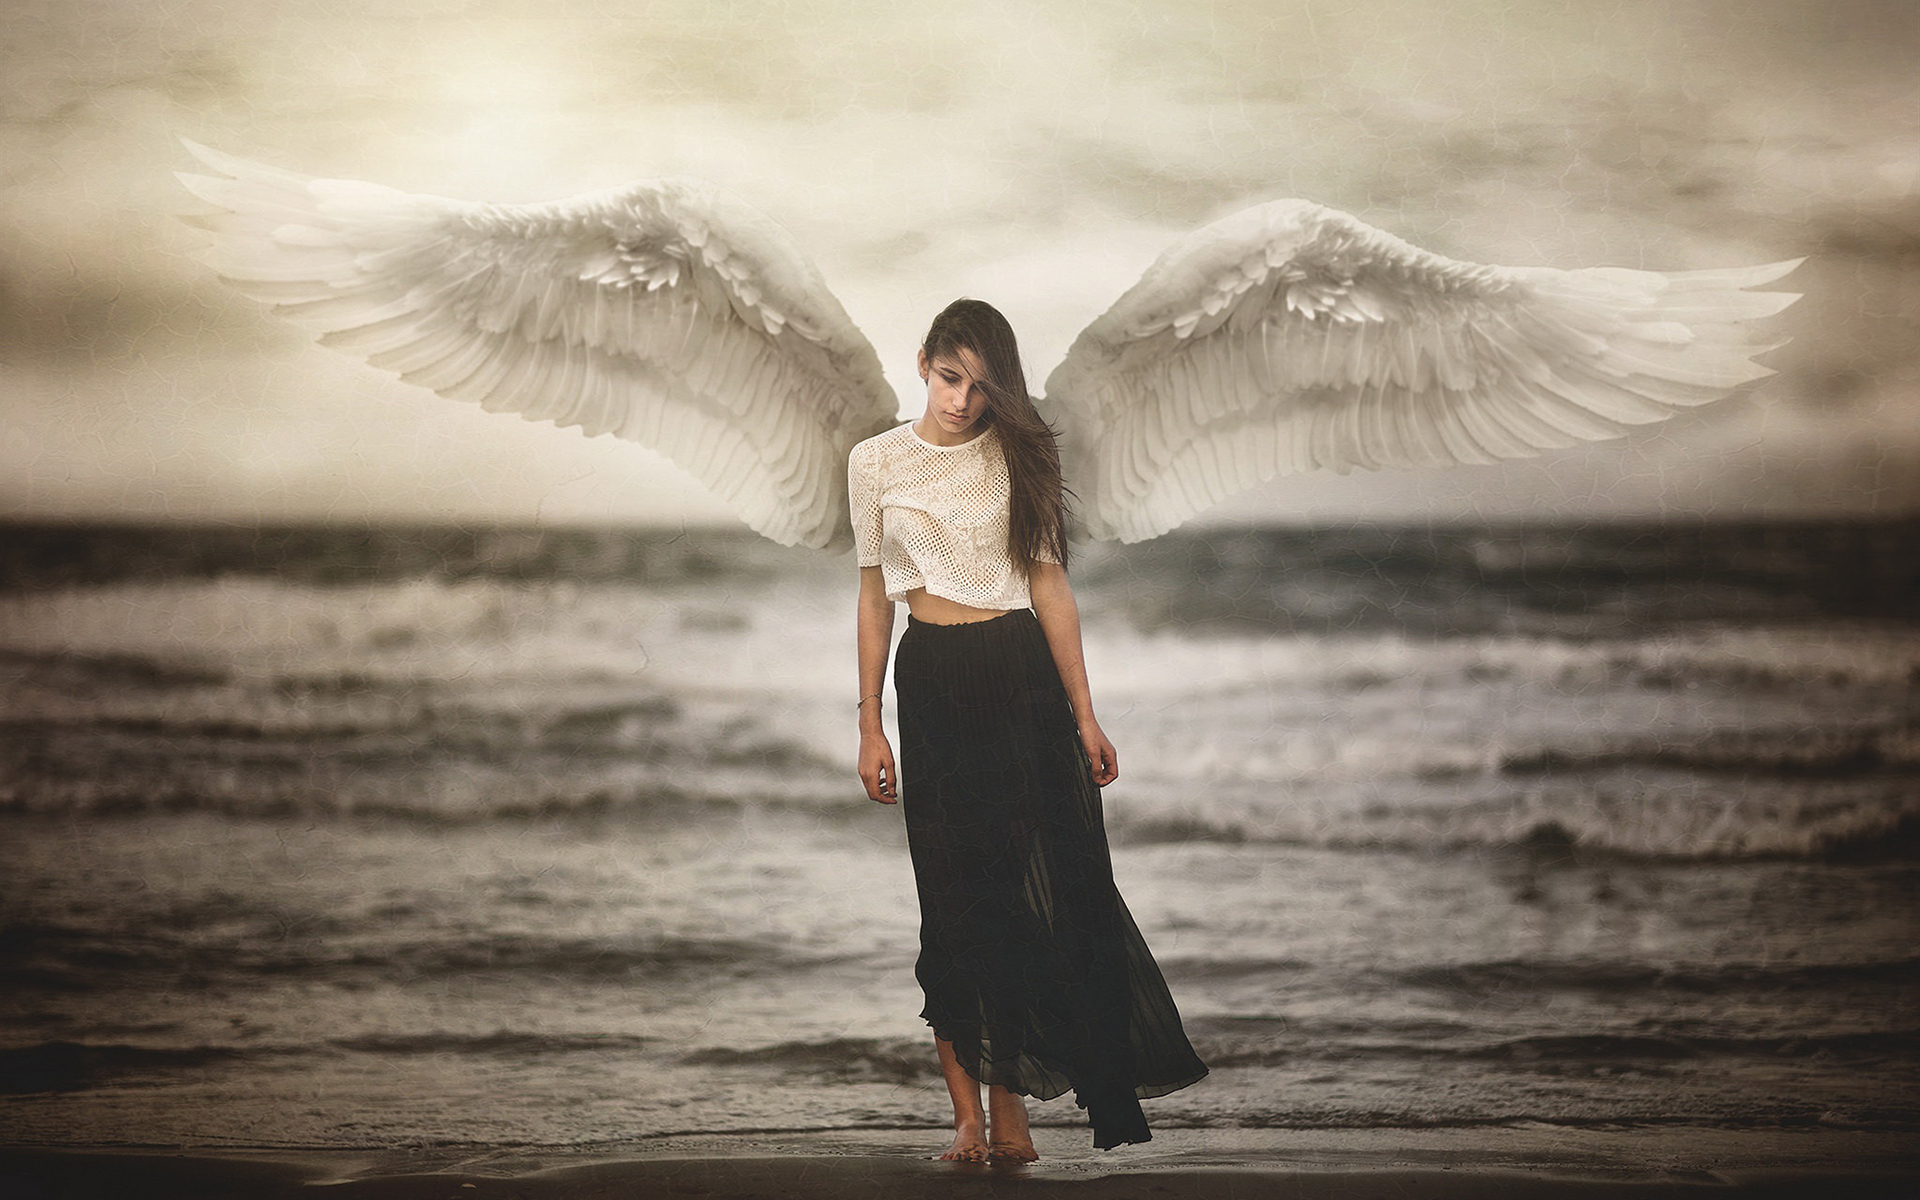 Angels women. Девушка - ангел. Девушка с крыльями. Девушка с крыльями ангела. Фотосессия с крыльями ангела.